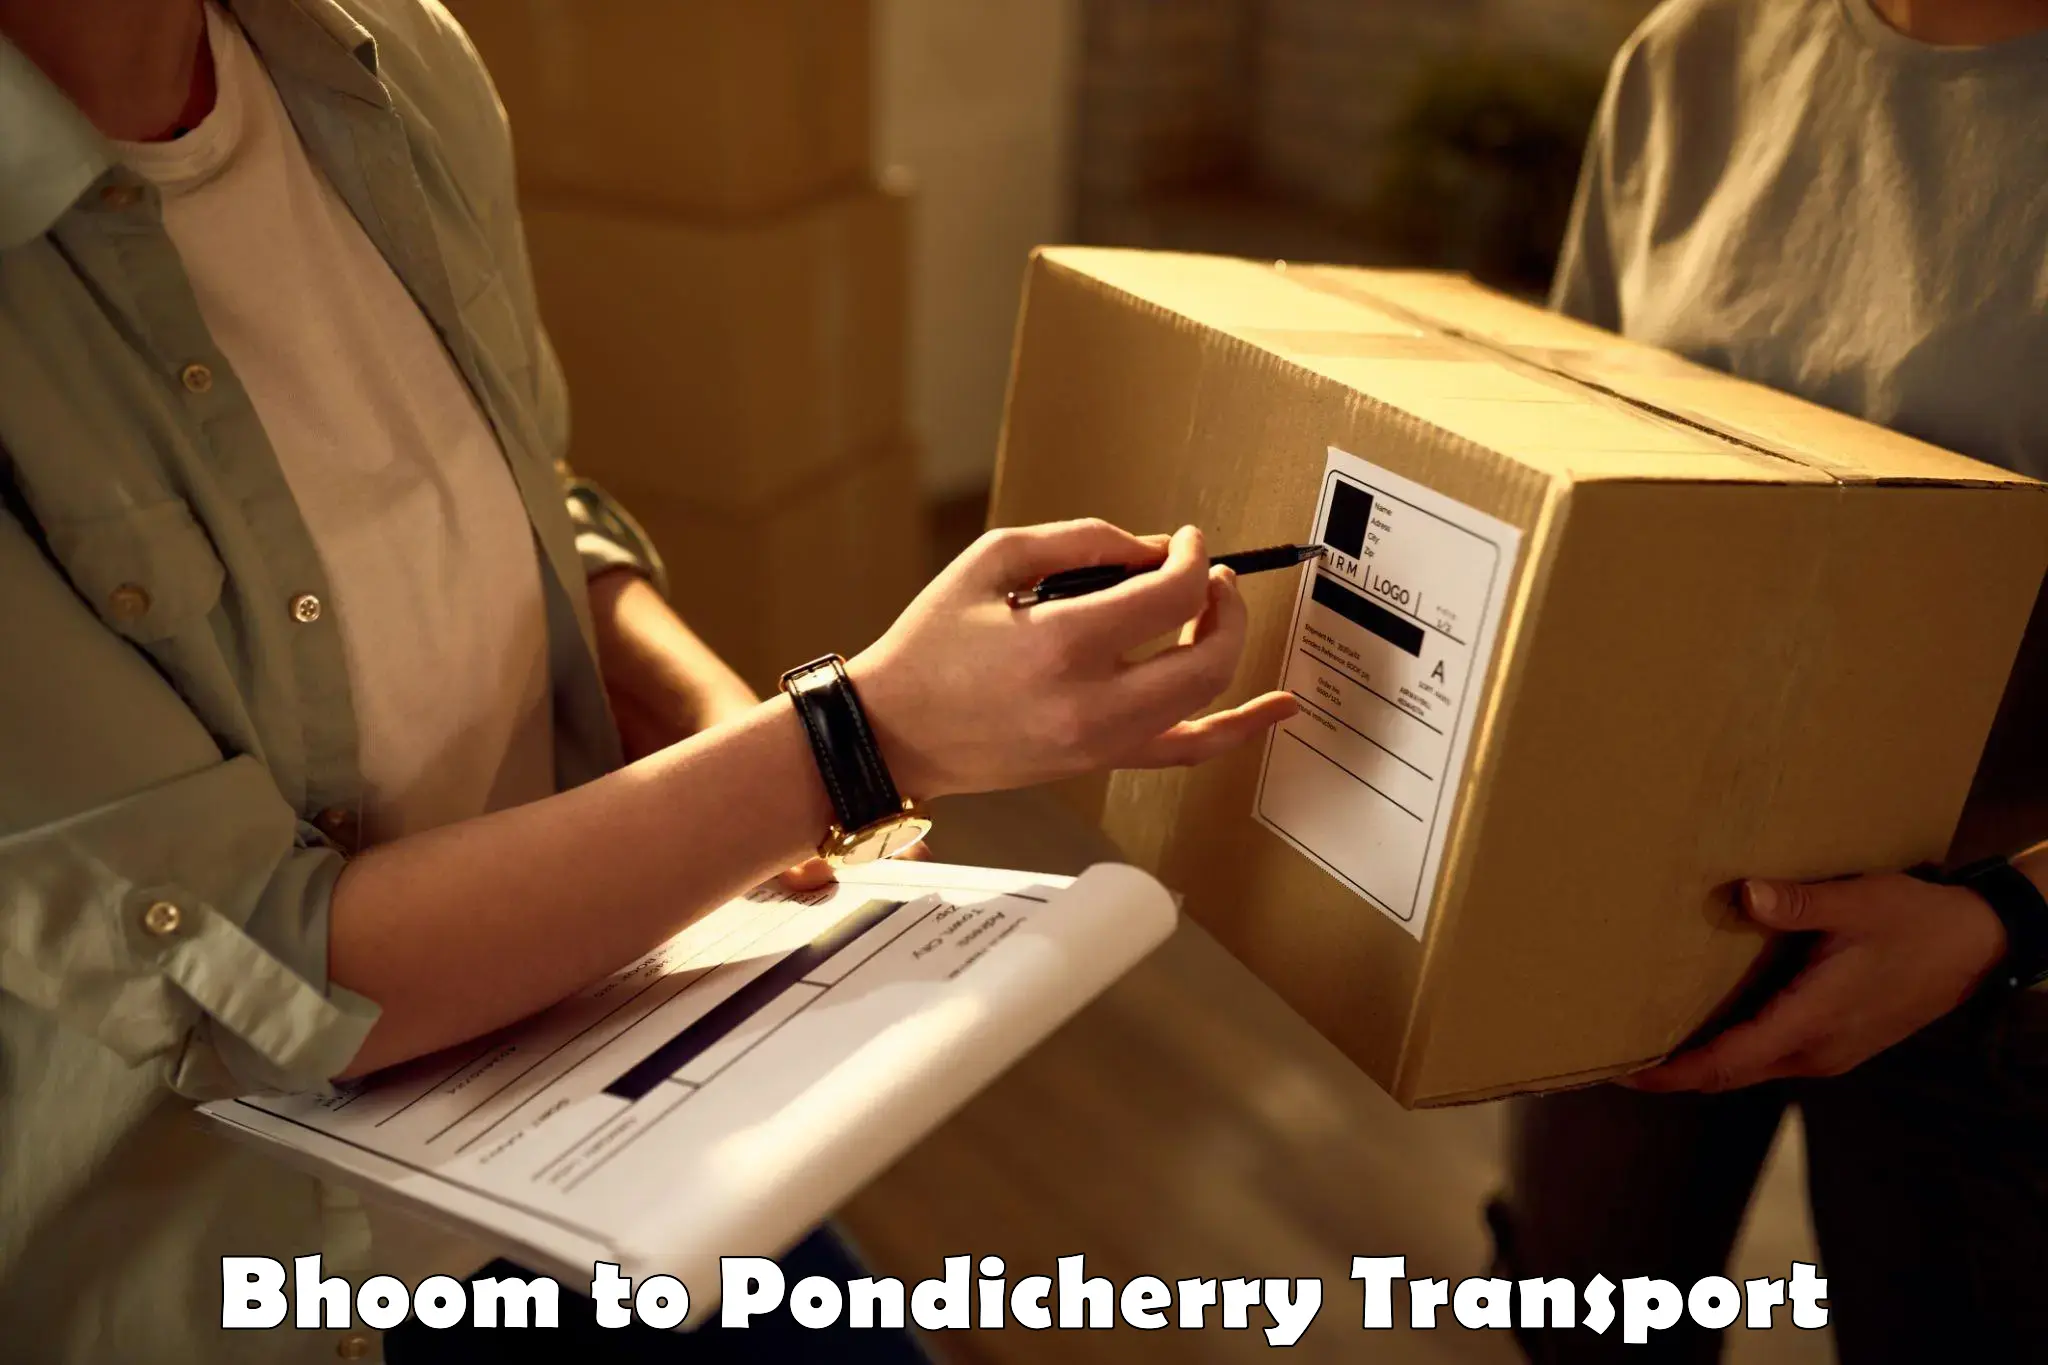 Shipping partner Bhoom to Pondicherry